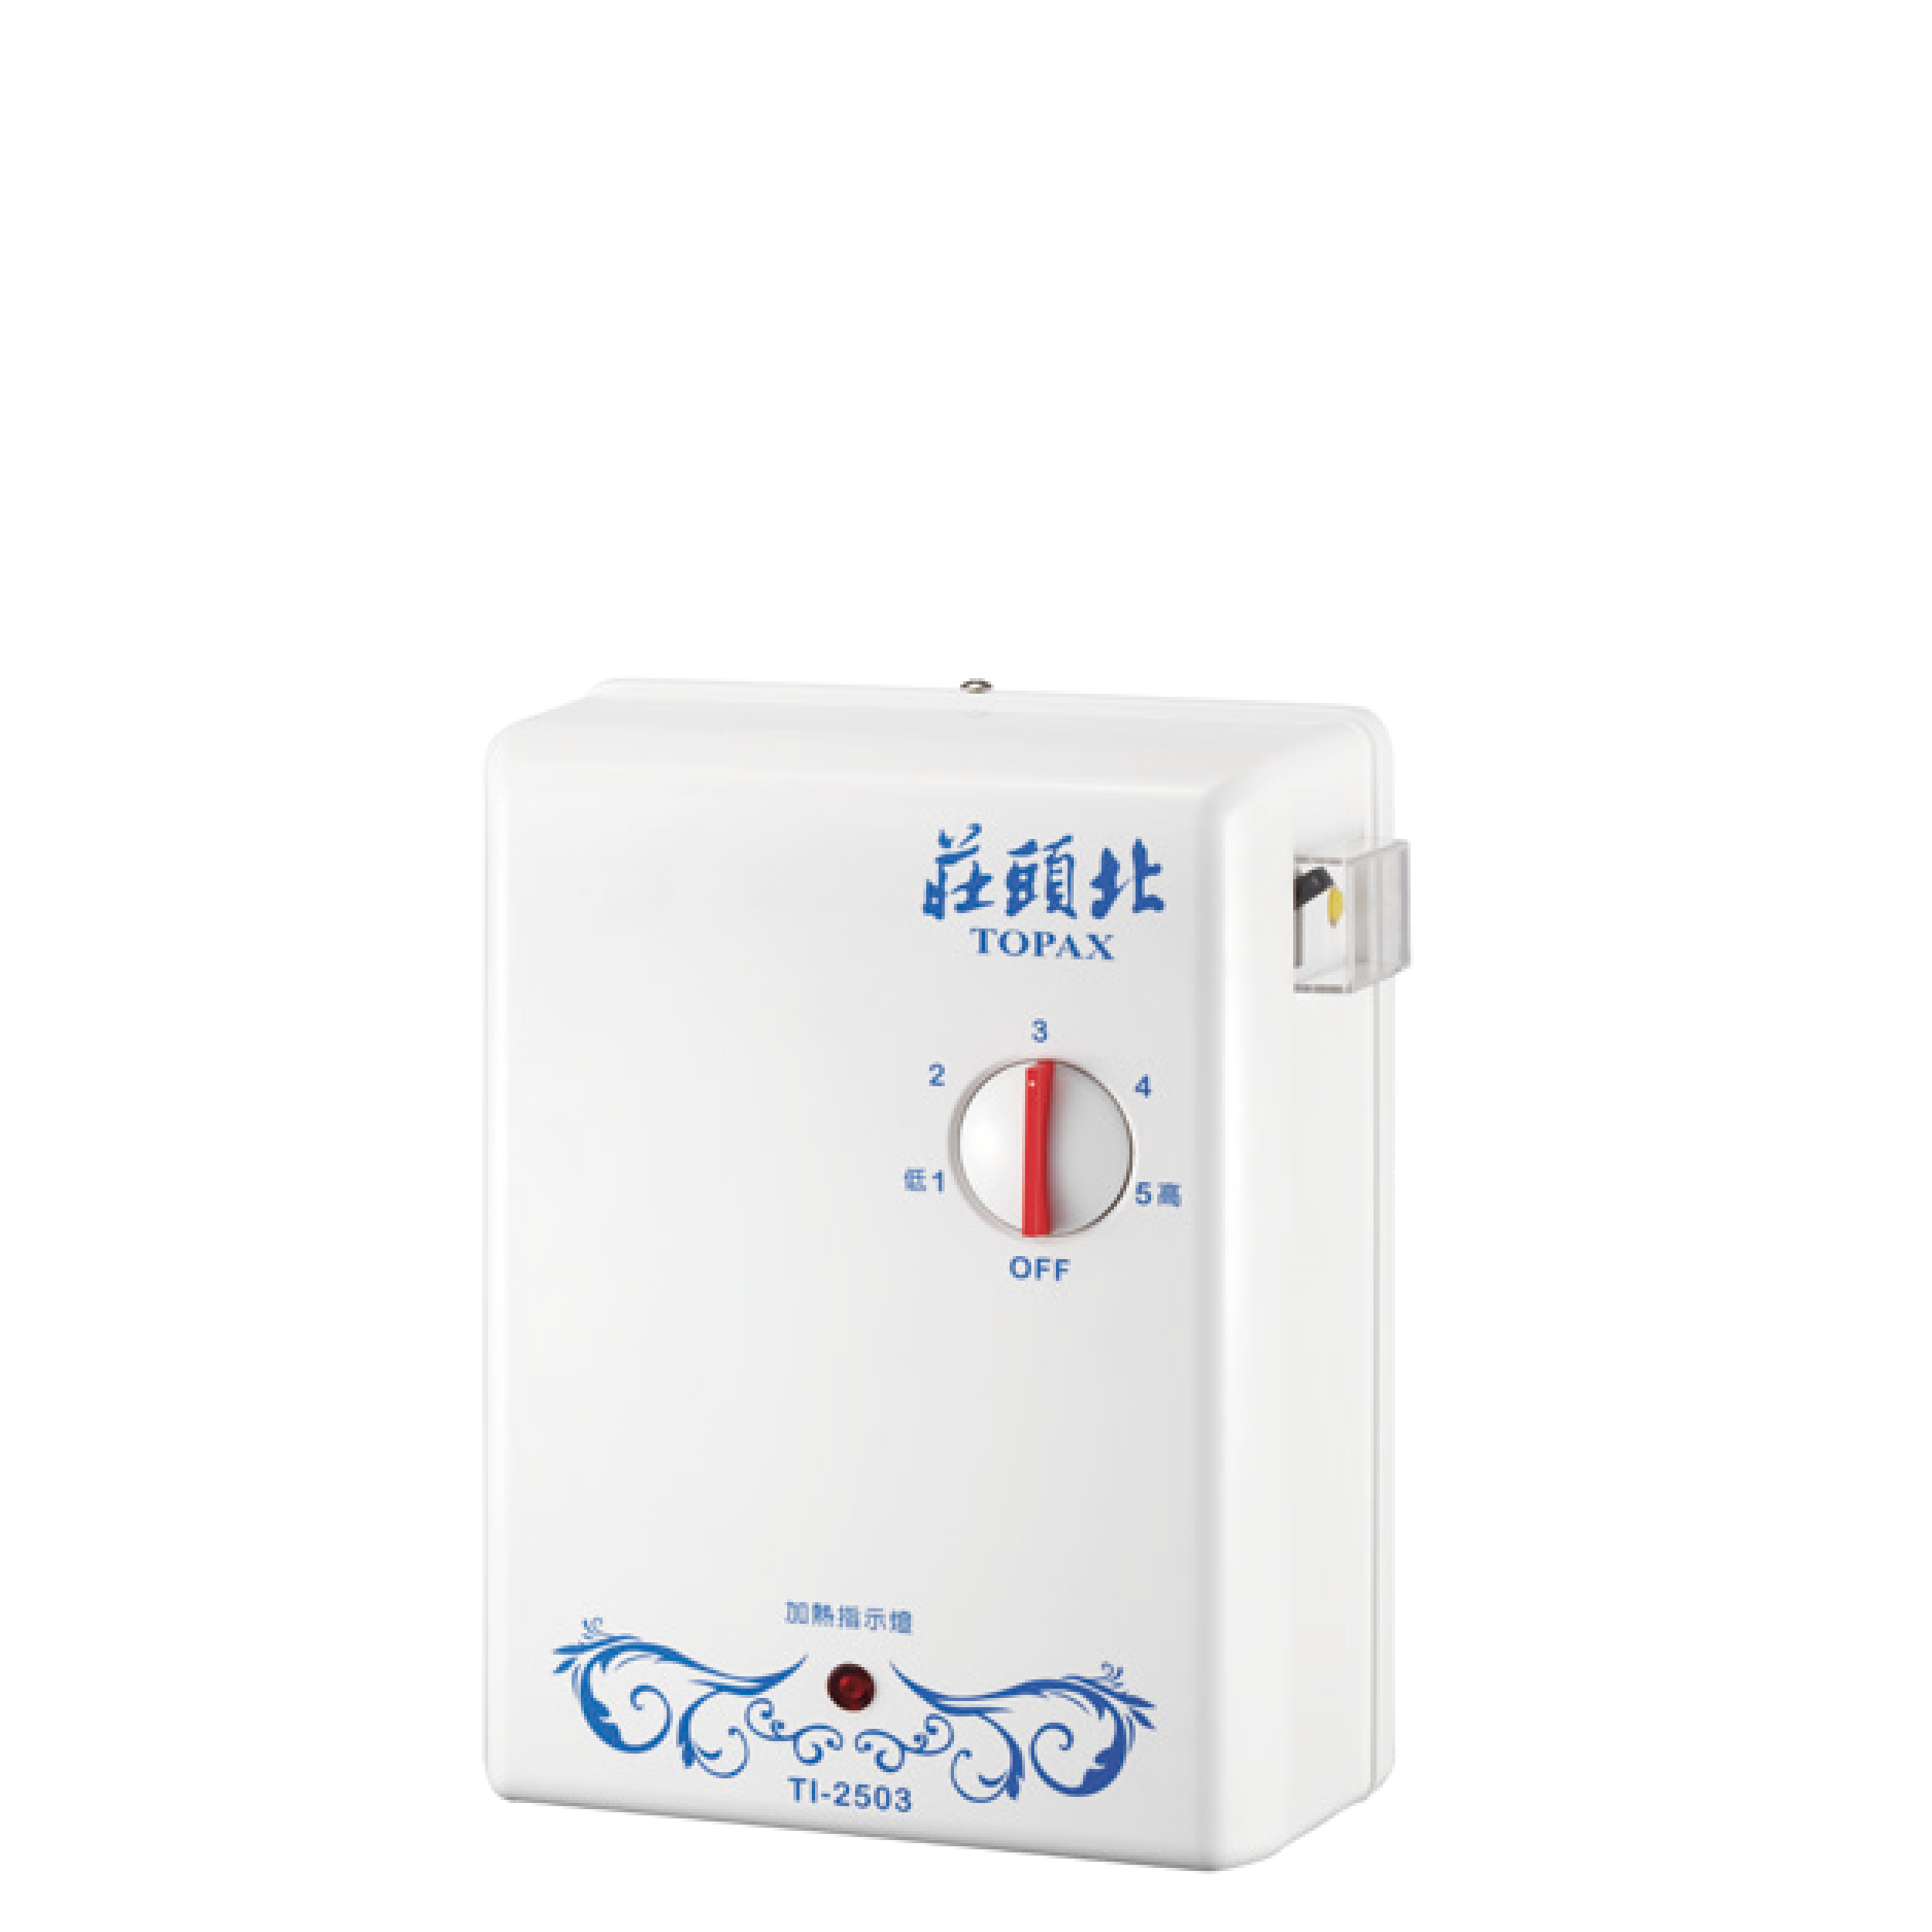 熱水器推薦比較 | TI-2503分段式瞬間電能熱水器